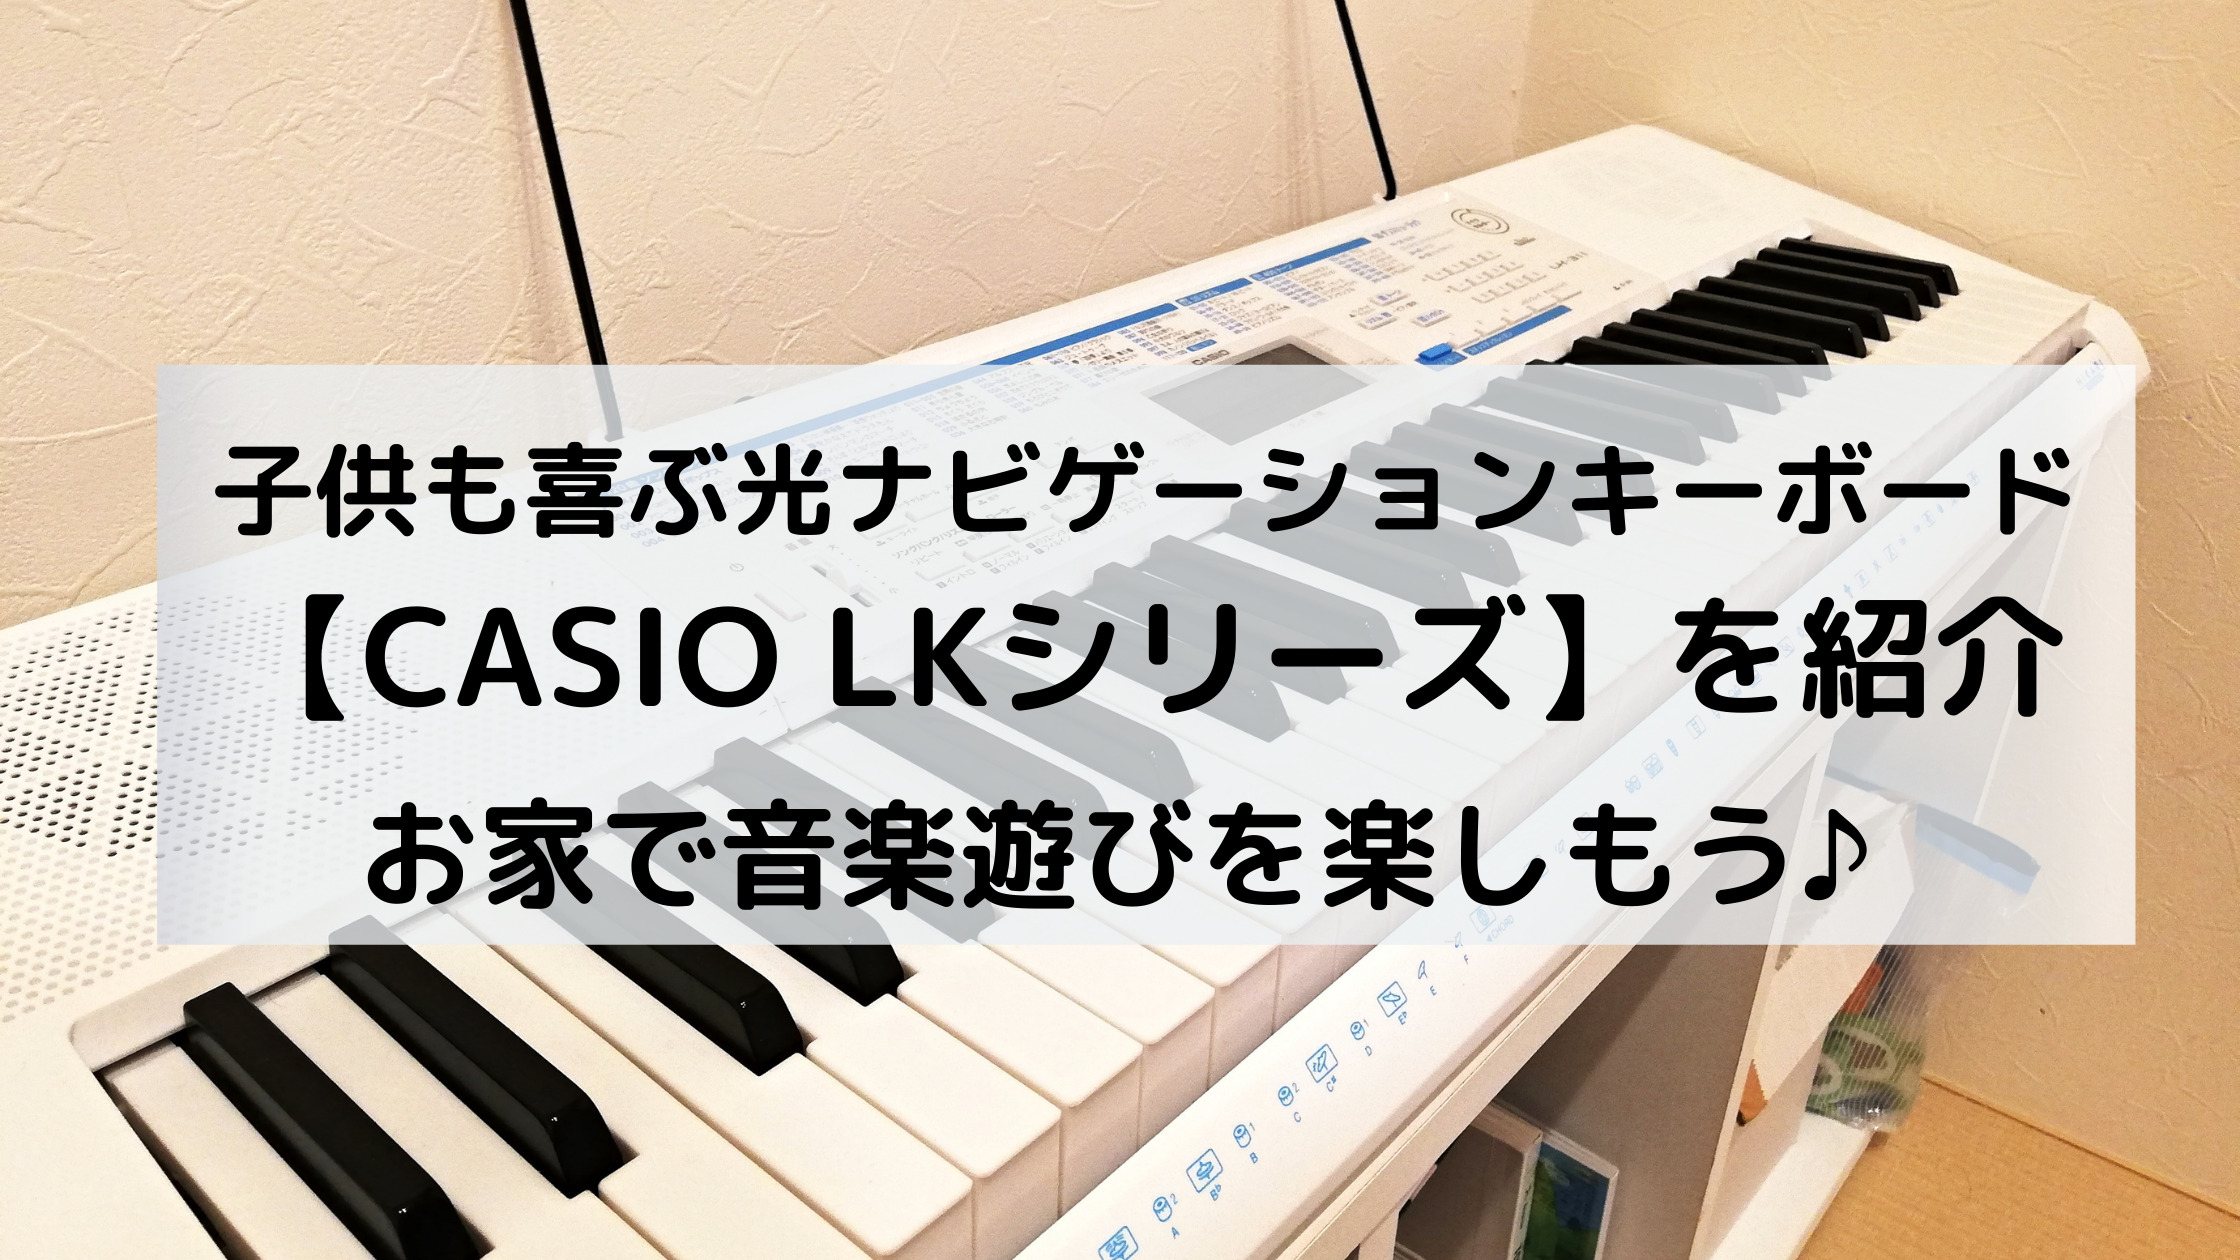 子供も喜ぶ光ナビゲーションキーボード Casio Lkシリーズ お家で音楽に触れて遊ぼう キャロみのお家